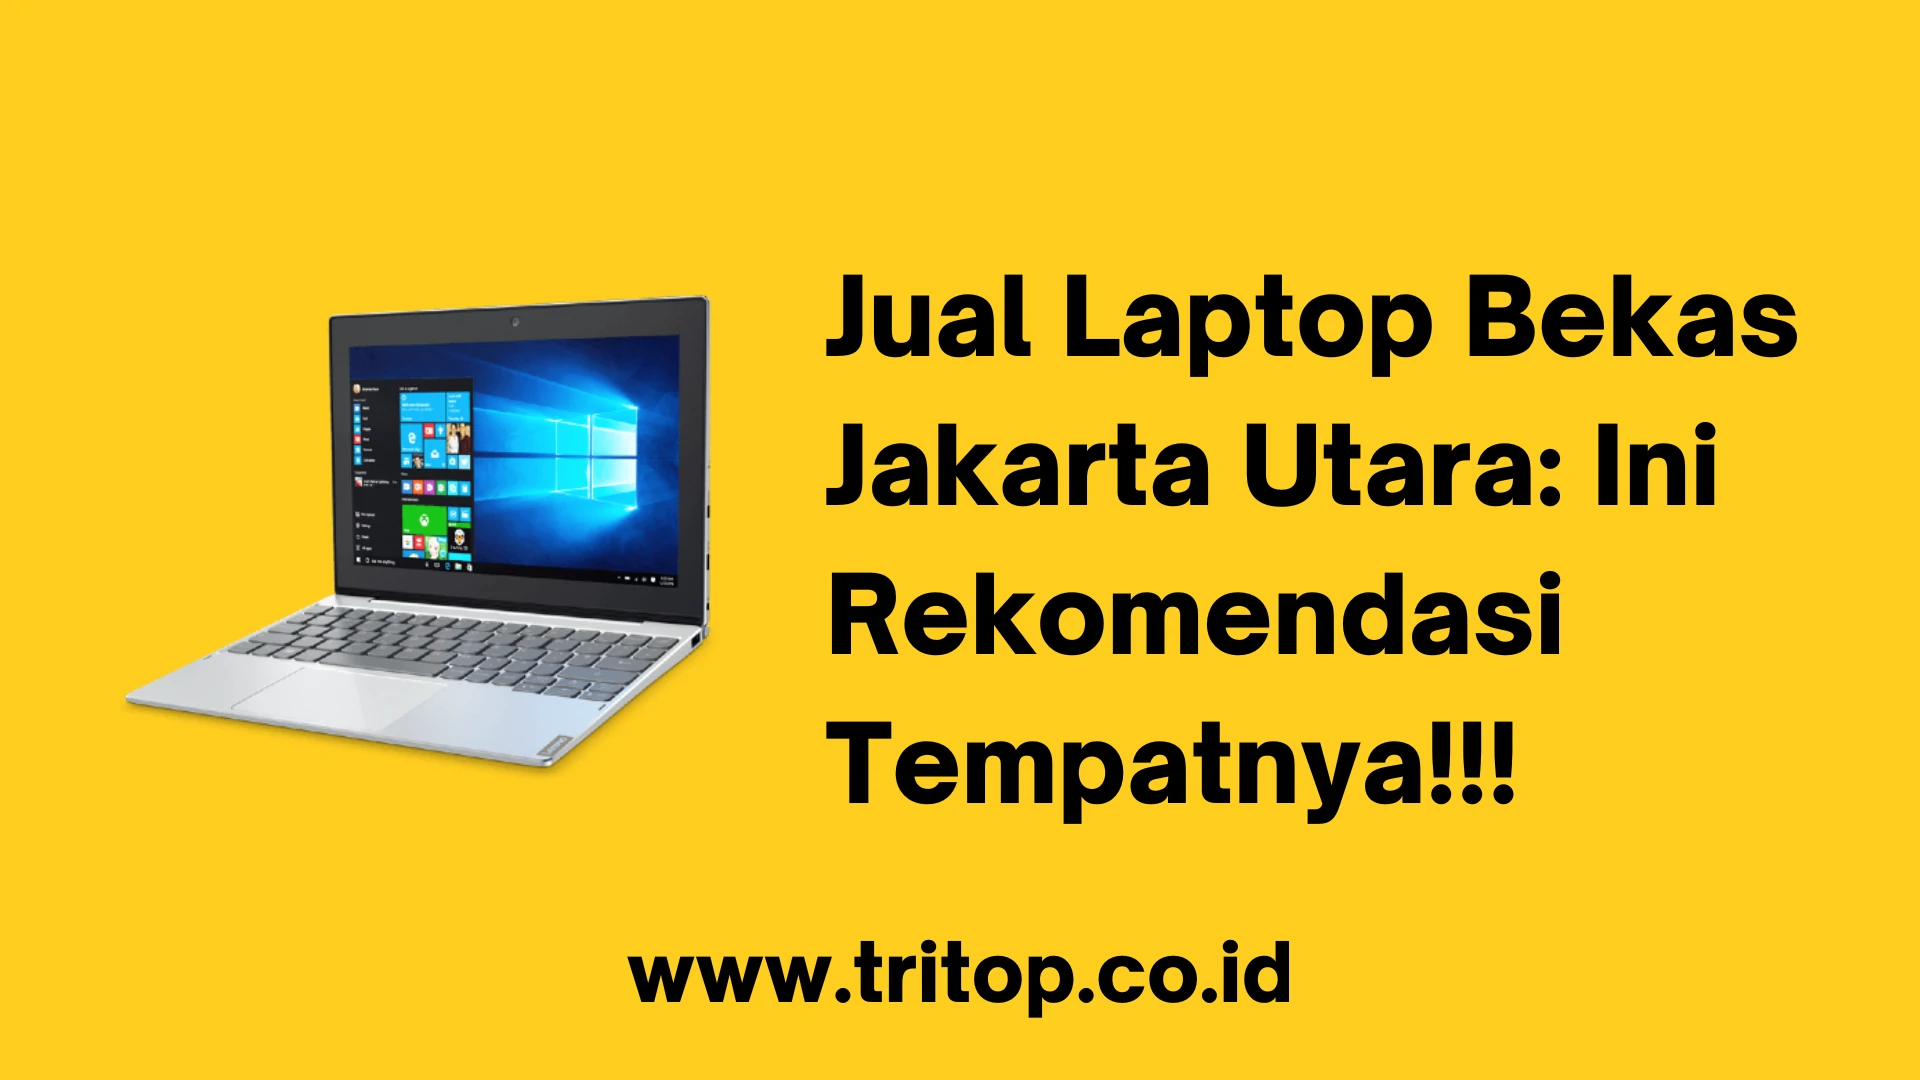 Jual Laptop Bekas Jakarta Utara